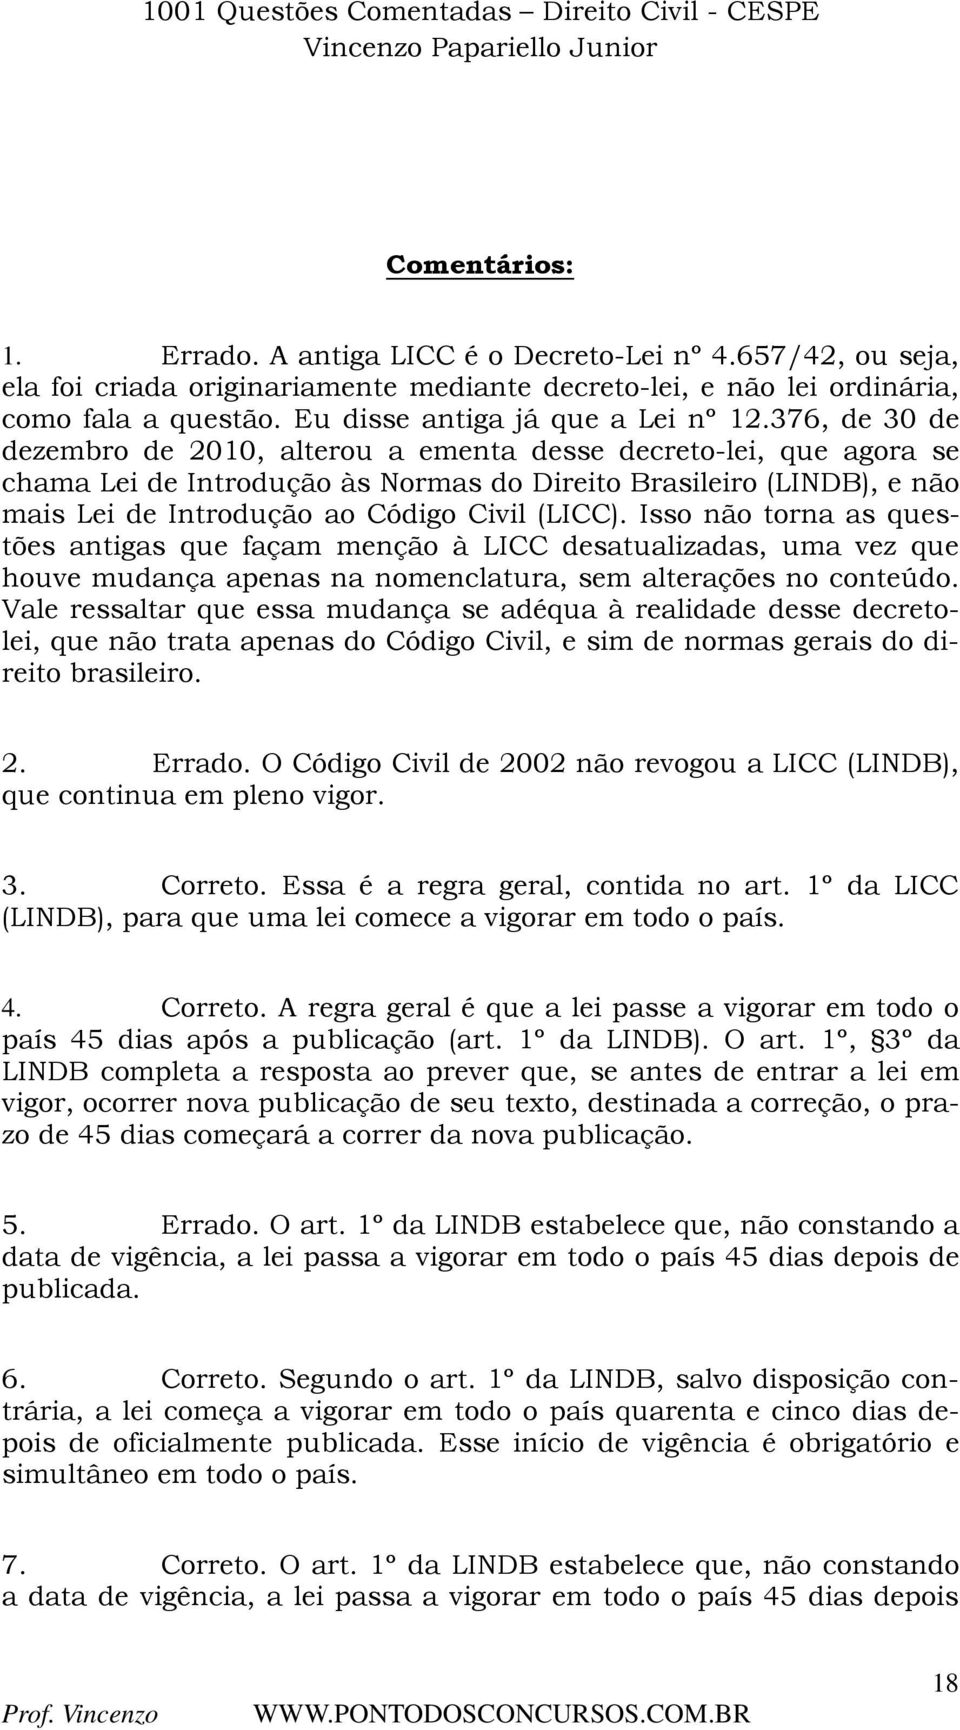 376, de 30 de dezembro de 2010, alterou a ementa desse decreto-lei, que agora se chama Lei de Introdução às Normas do Direito Brasileiro (LINDB), e não mais Lei de Introdução ao Código Civil (LICC).